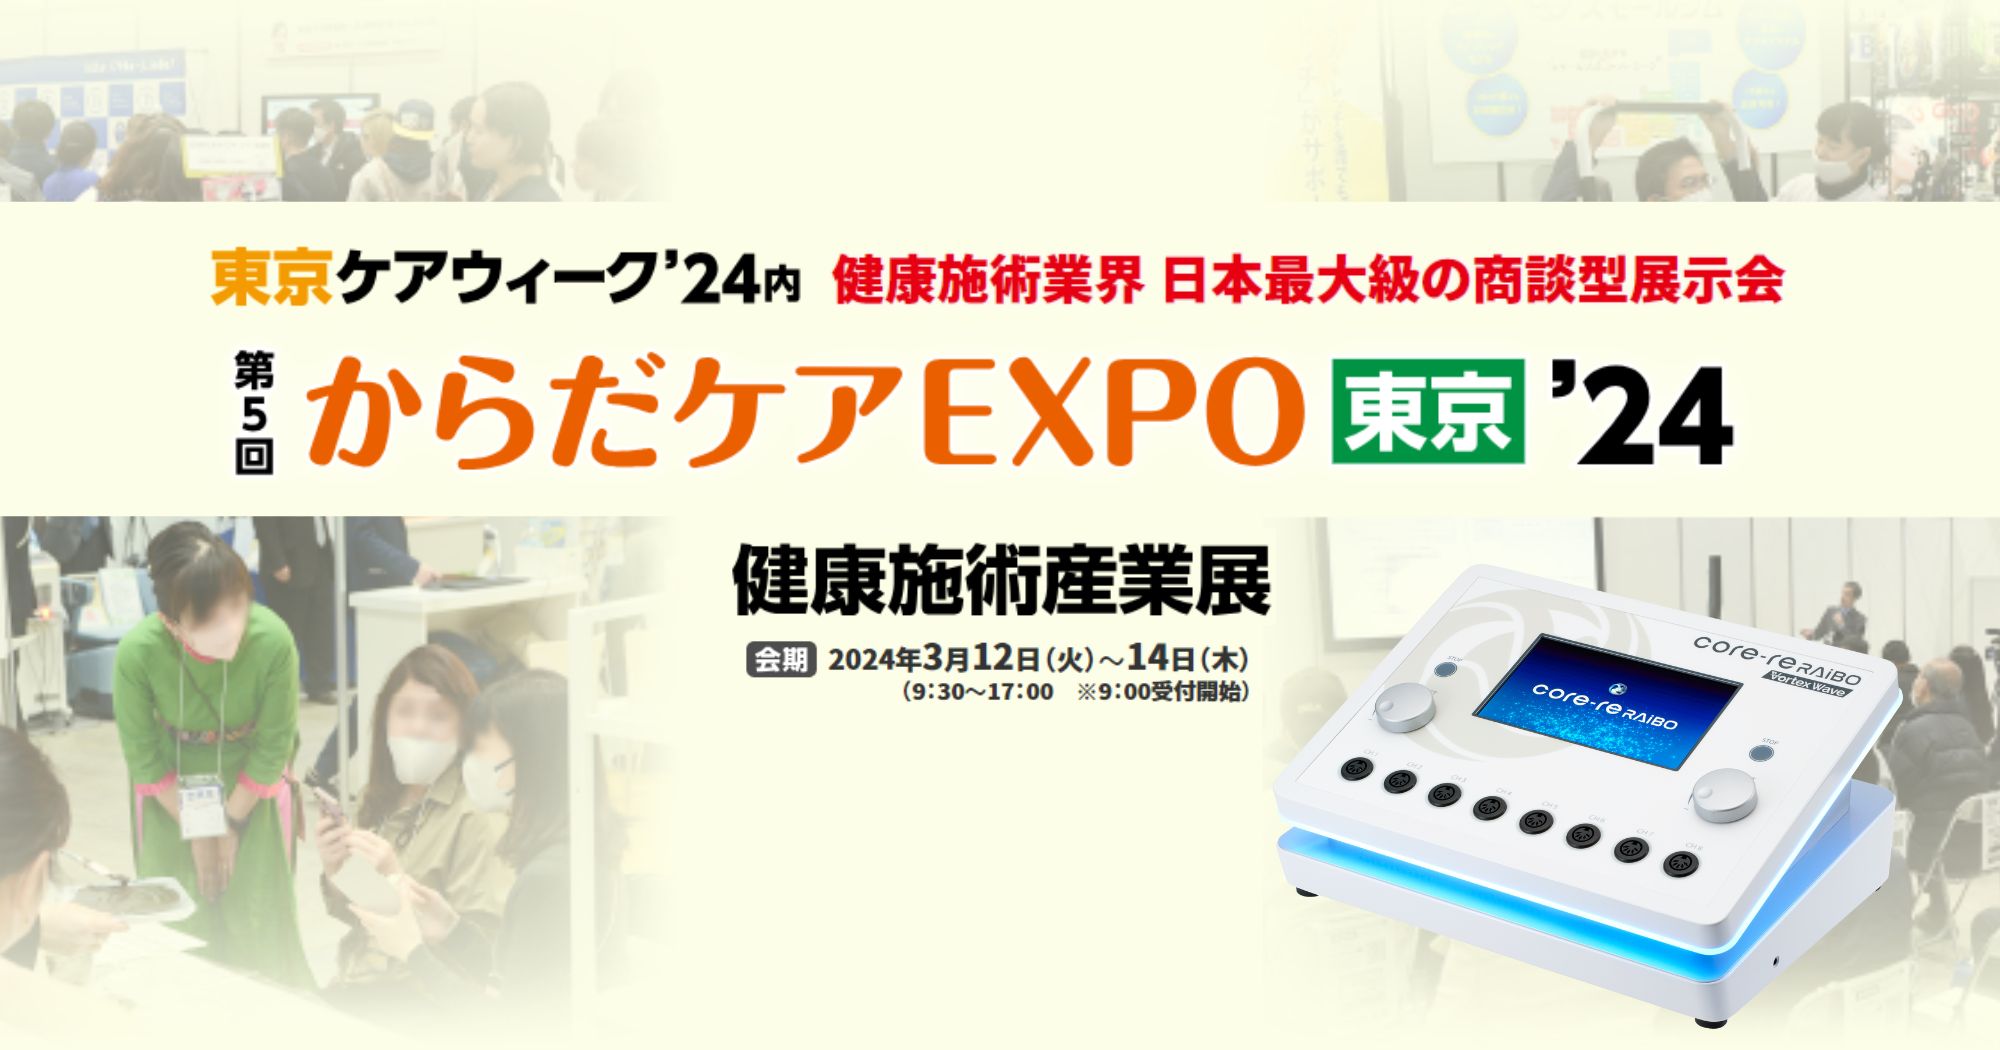 【からだケアEXPO東京’24 健康施術産業展】に出展します